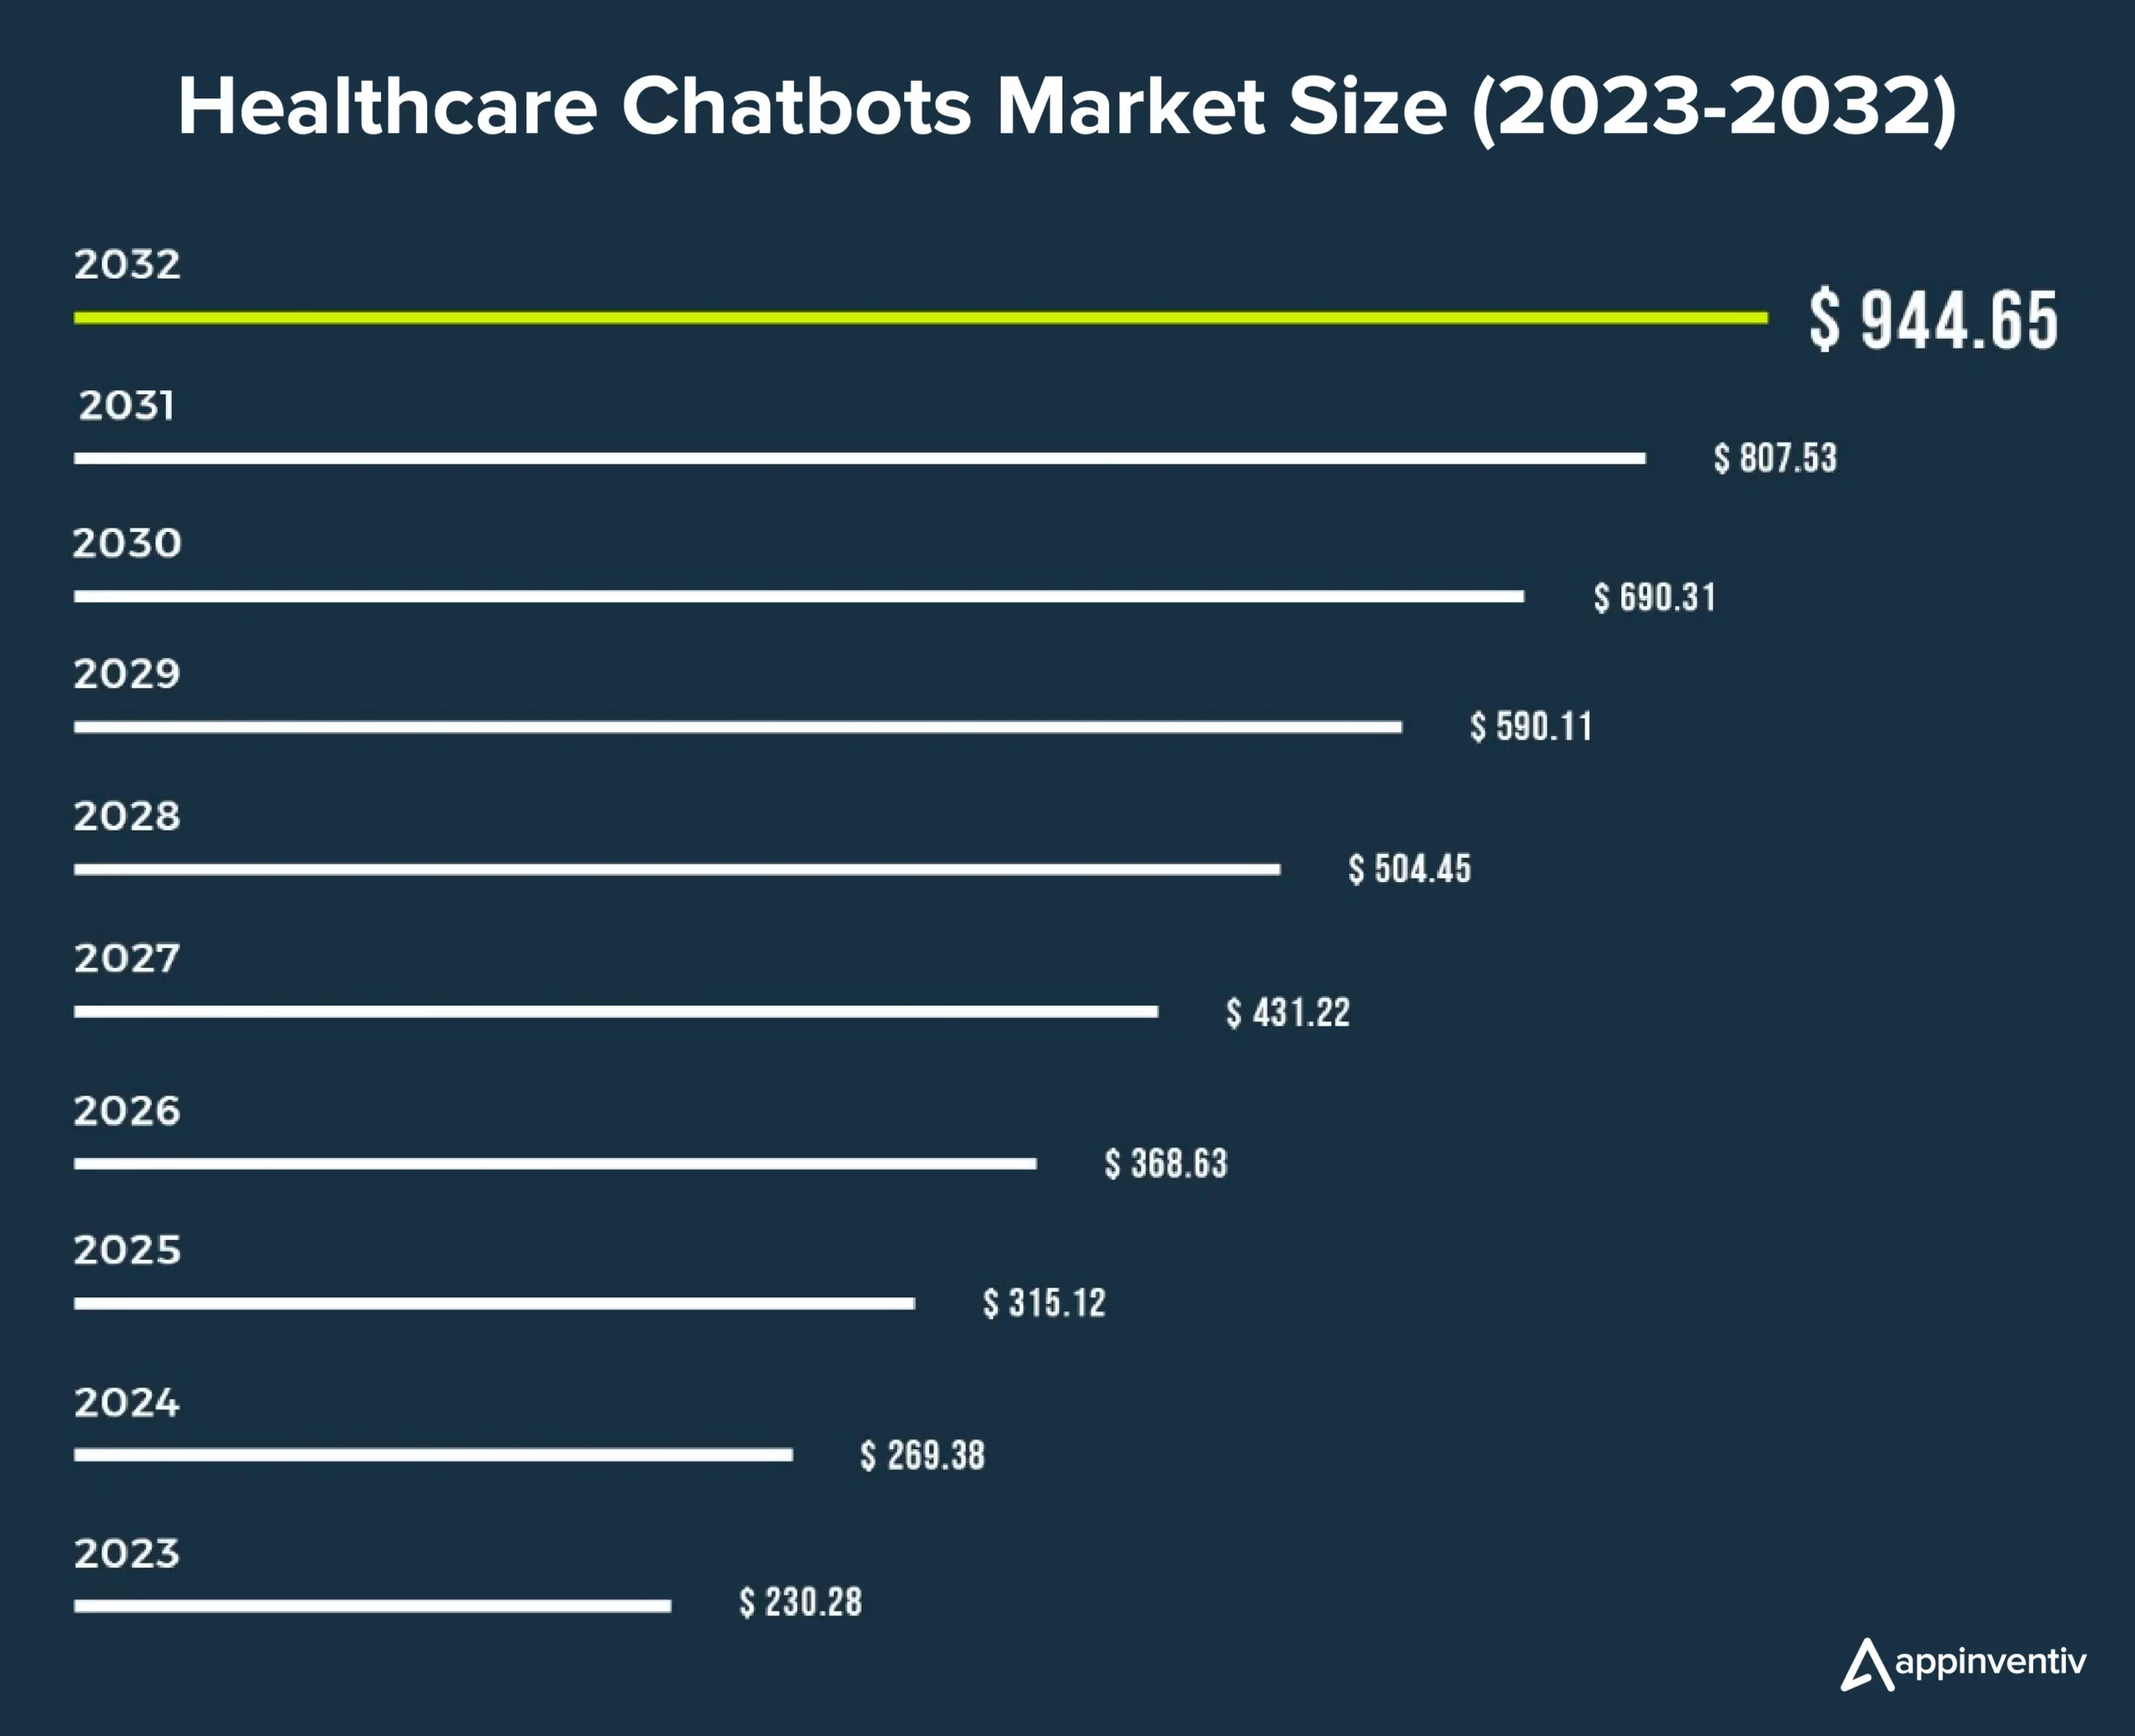 Healthcare Chatbots Market Size 2023-2032